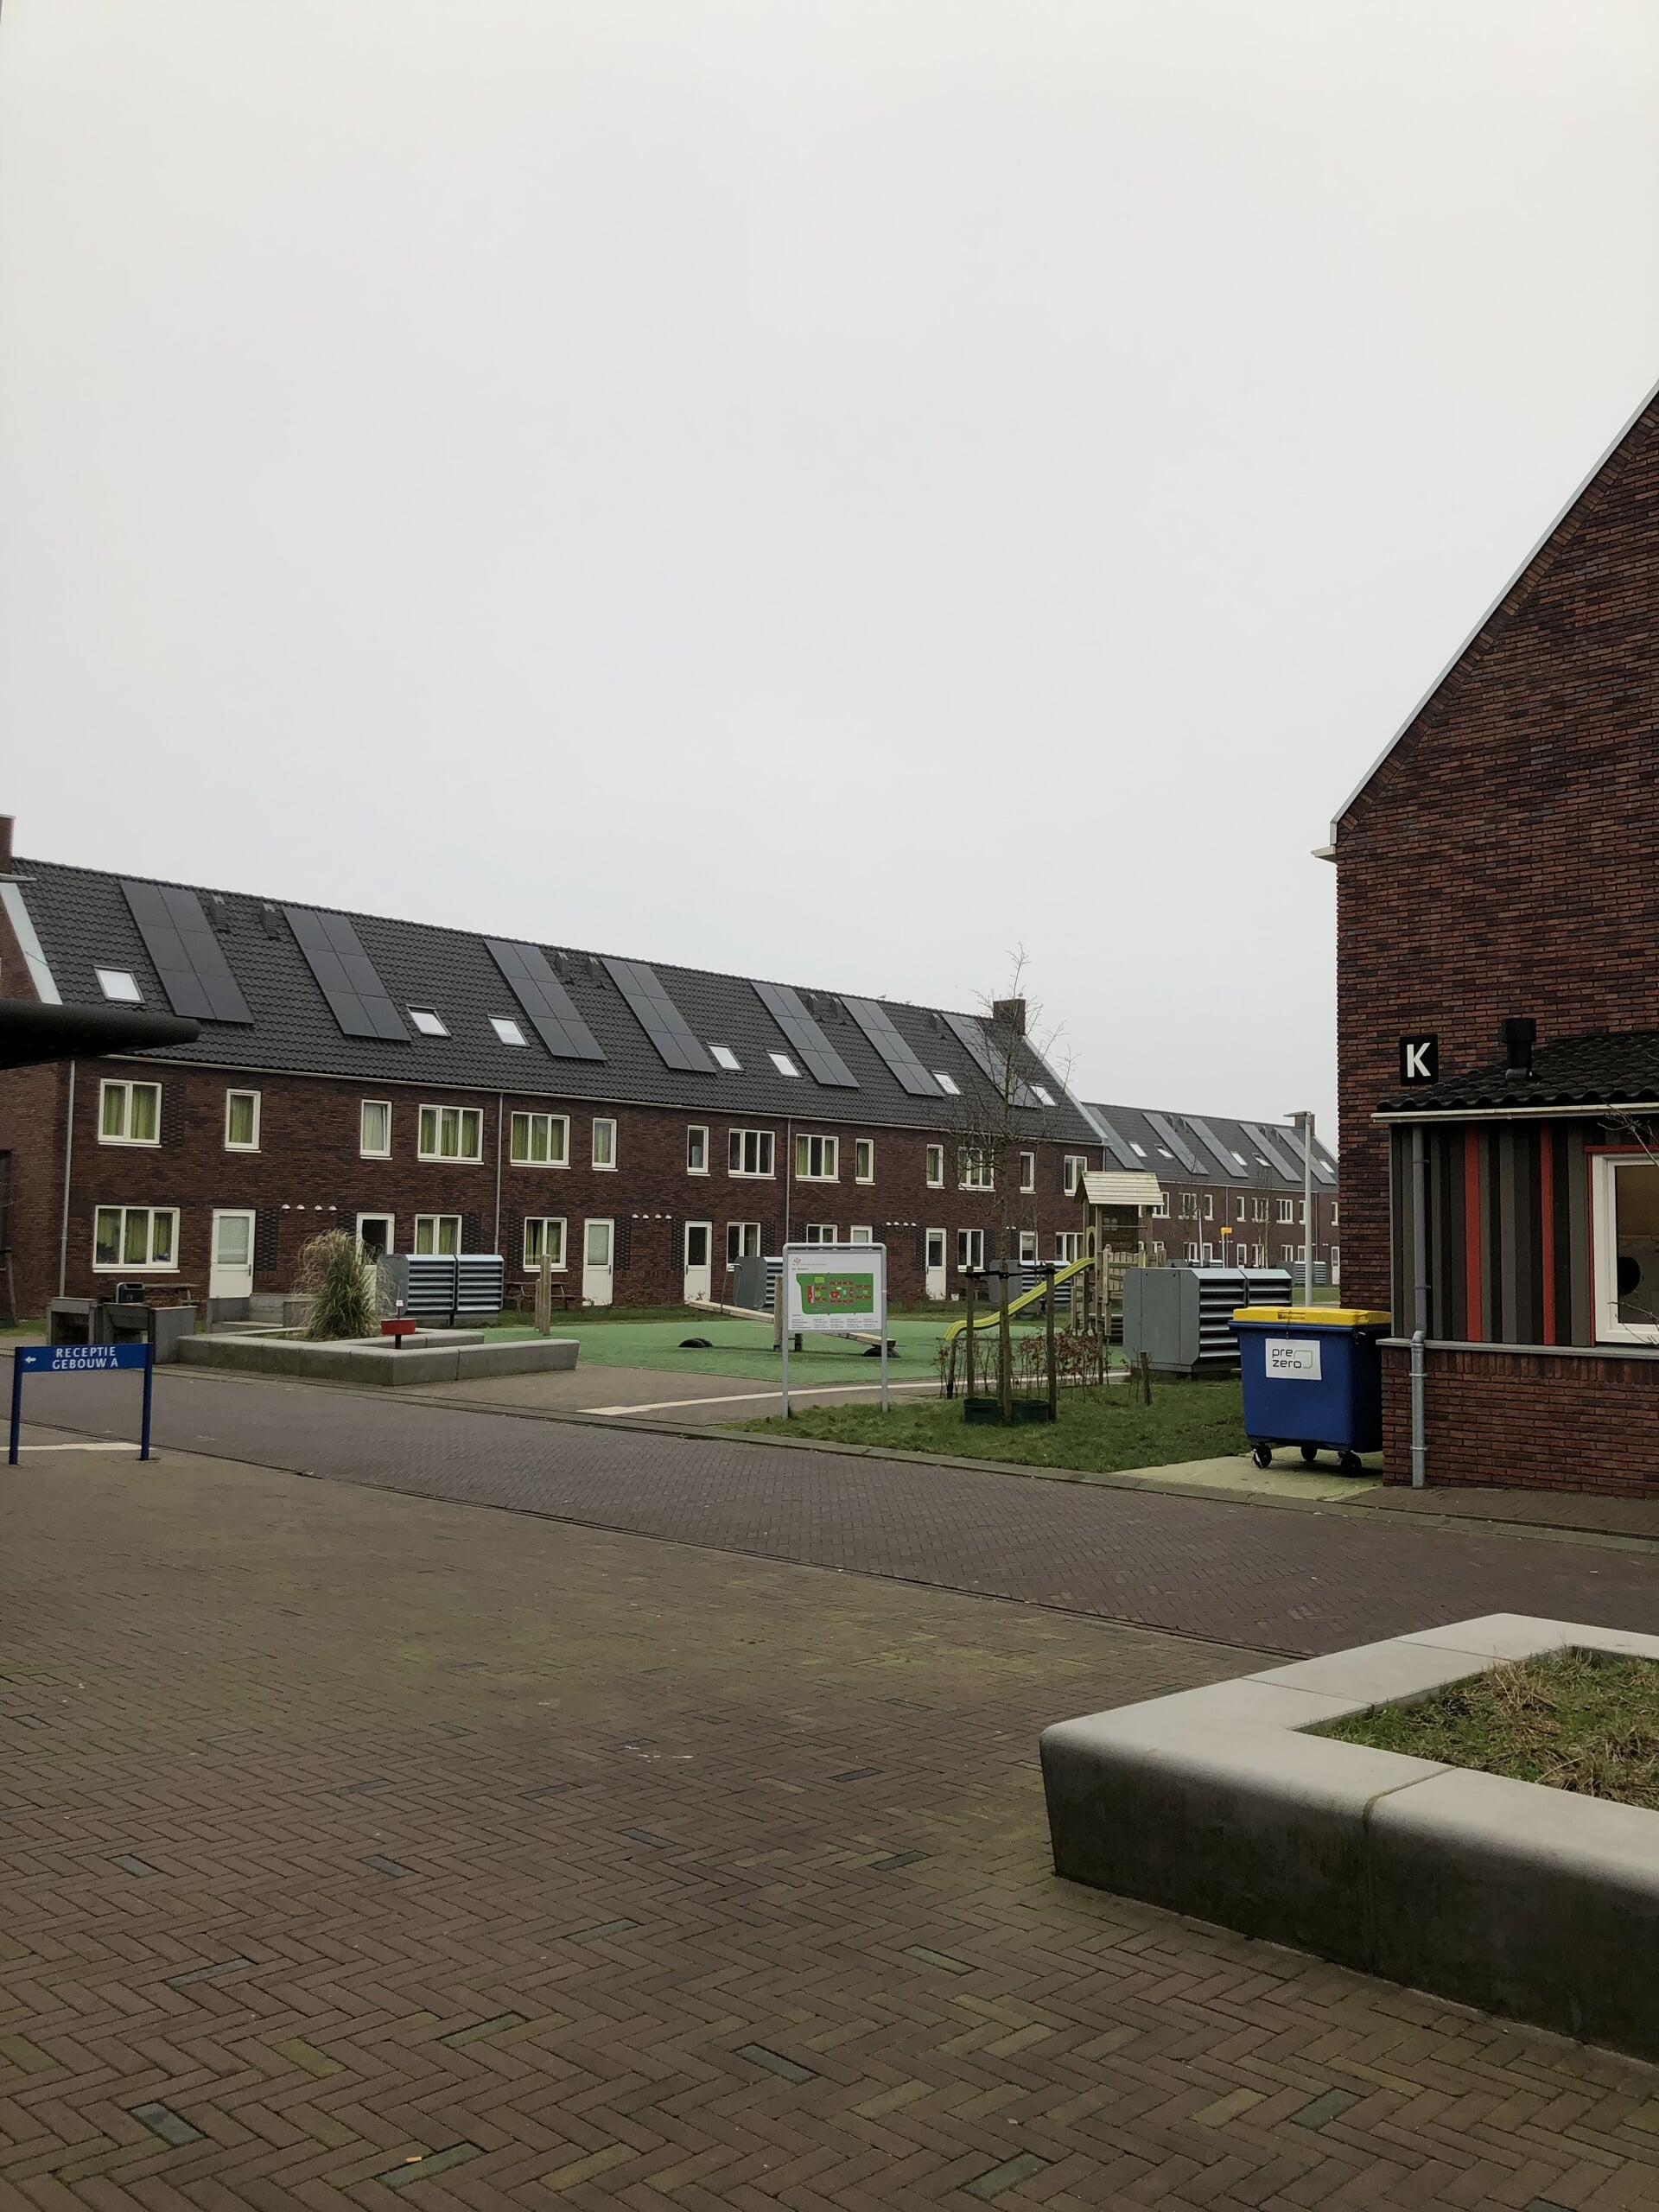 Impressie van het azc in Burgum in Friesland. Een vergelijkbaar project ziet Barneveld ook graag: een azc in de vorm van rijwoningen.